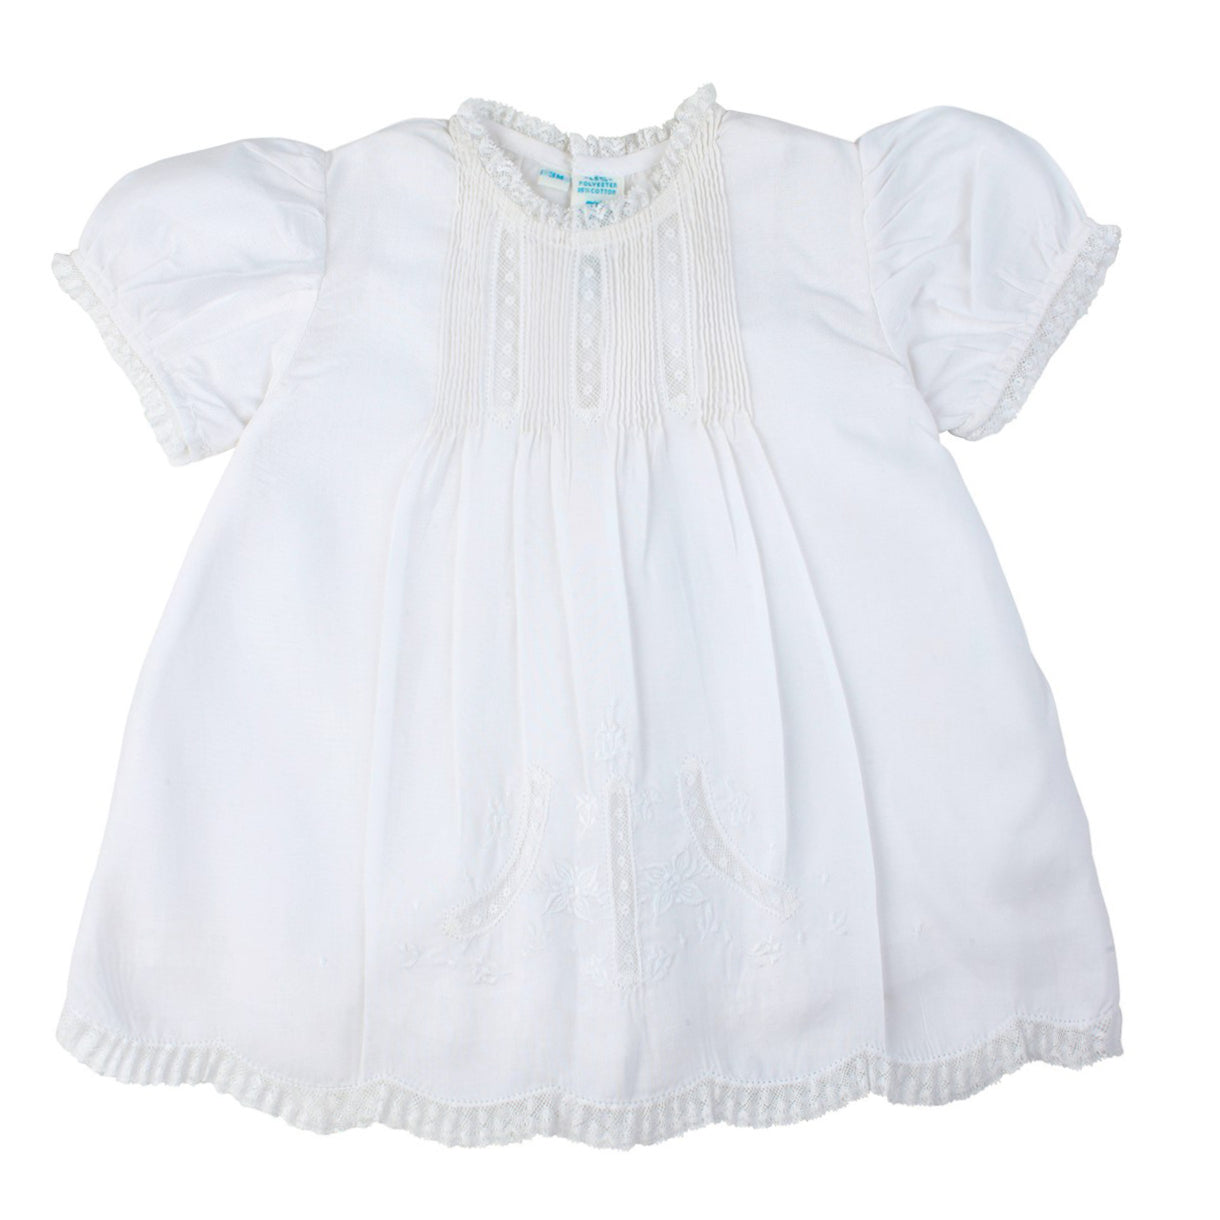 Feltman Brothers Lace Detail Infant Dress 6361